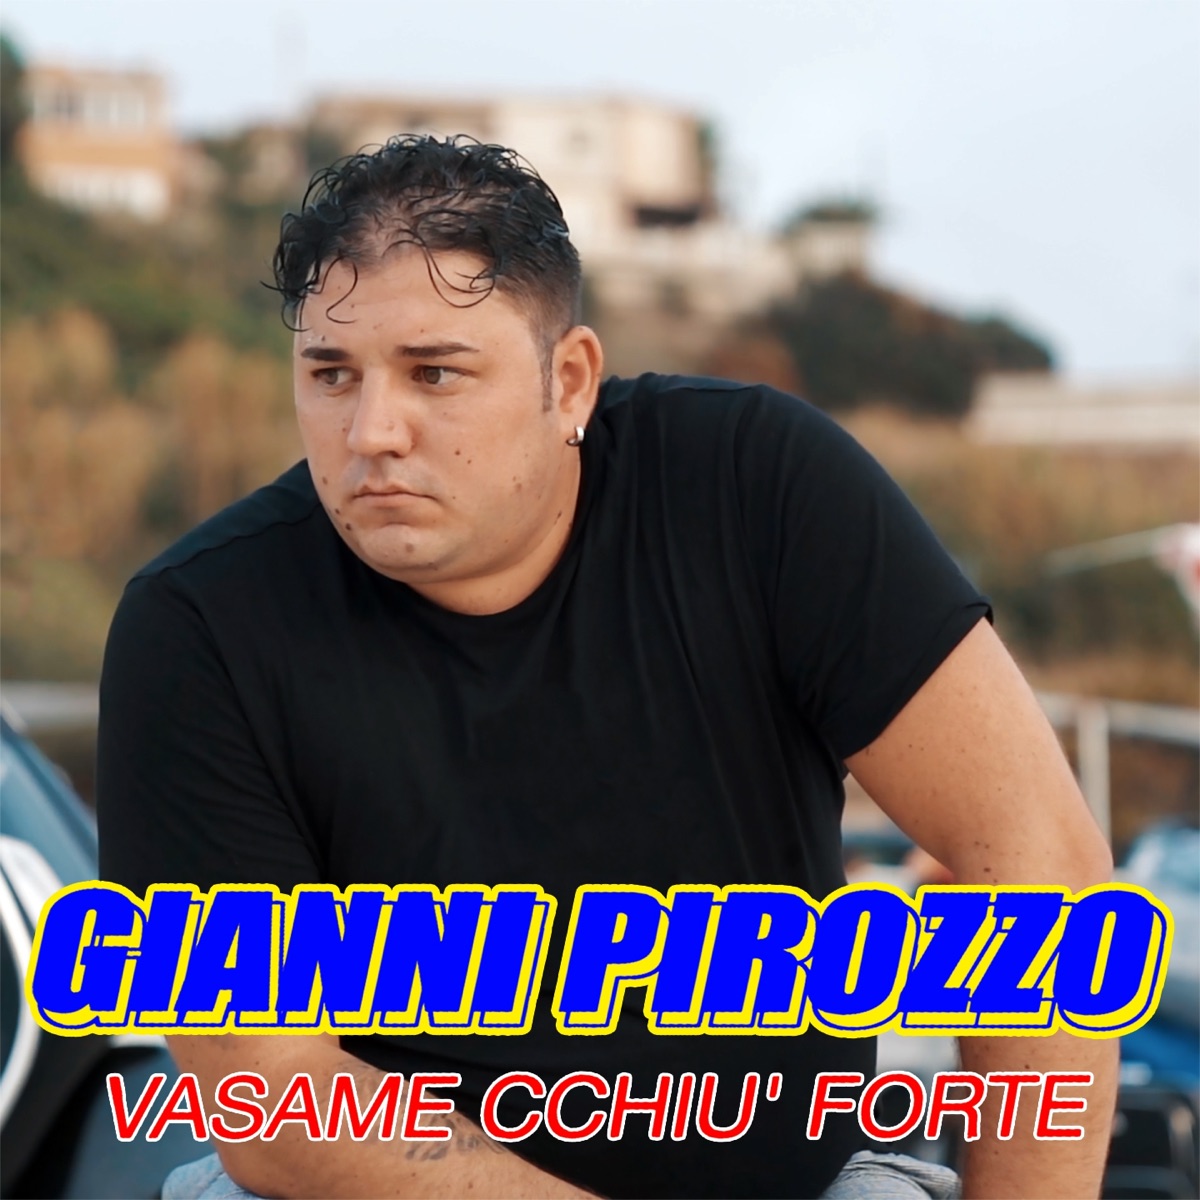 E mo' che vuo' - Album di Gianni Pirozzo - Apple Music